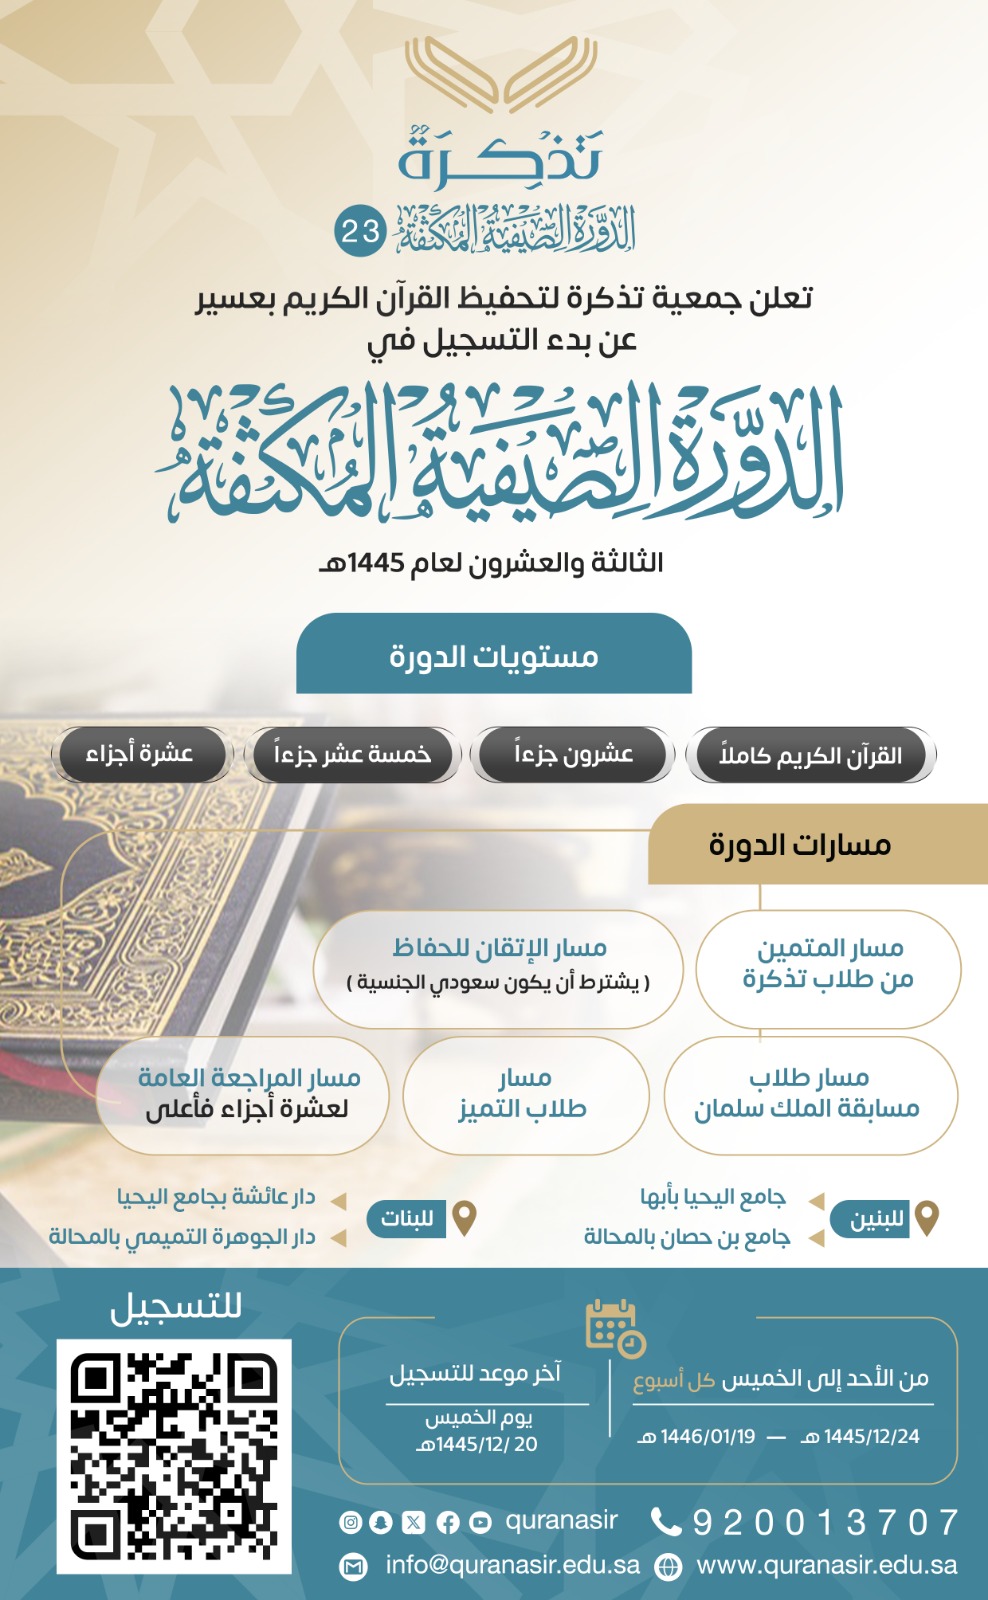 الجمعية الخيرية لتحفيظ القرآن الكريم بعسير